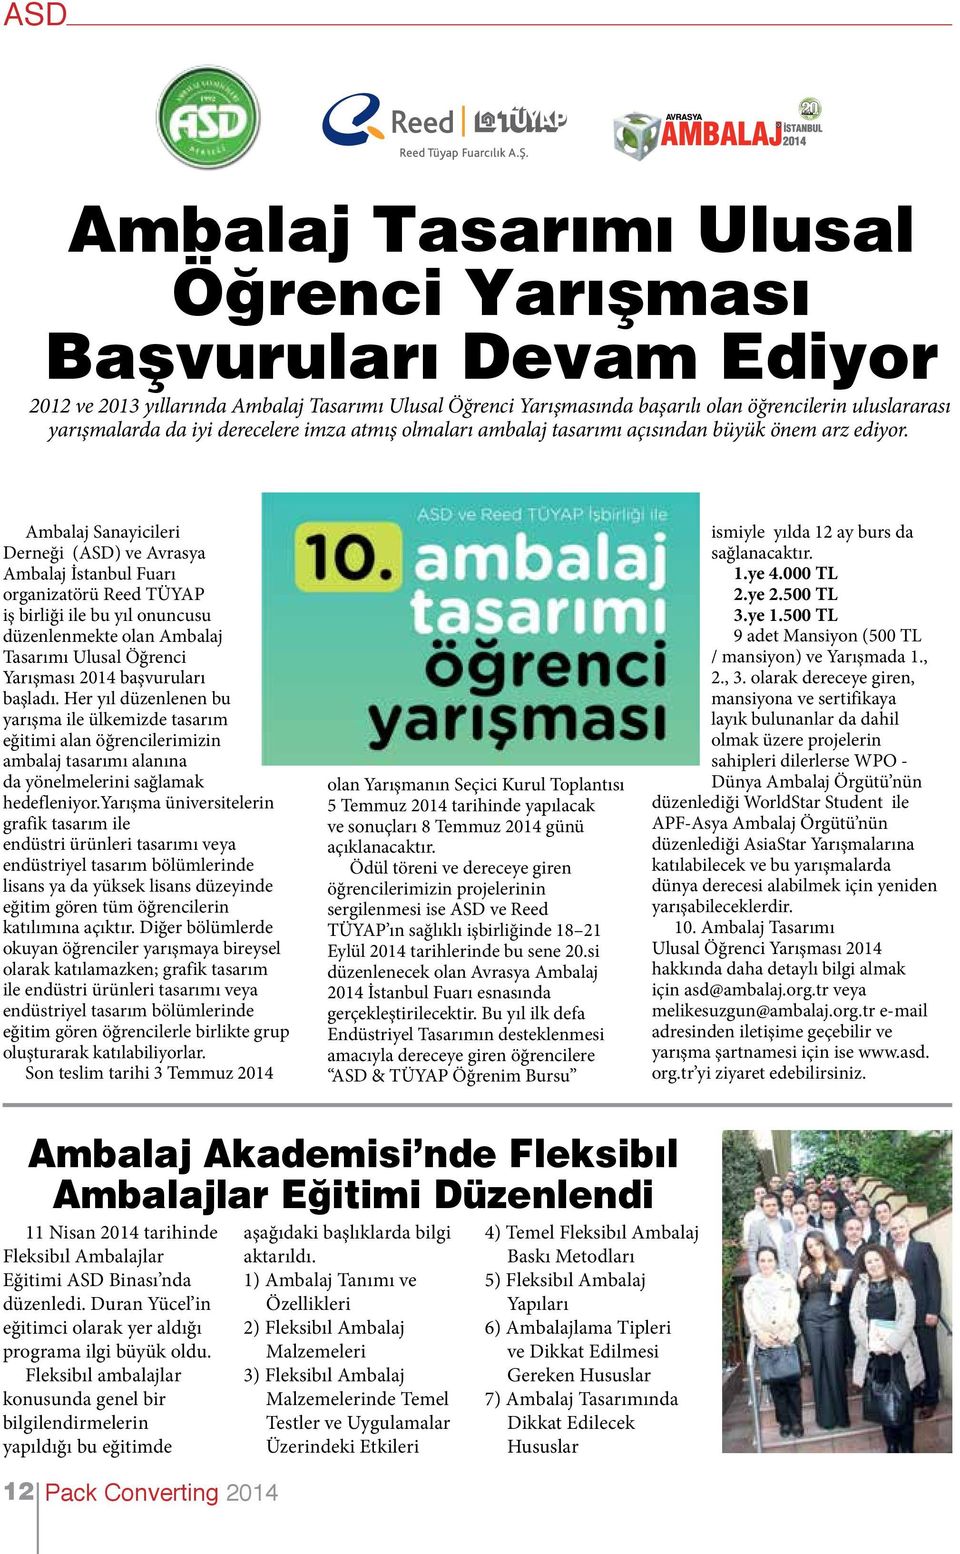 Ambalaj Sanayicileri Derneği (ASD) ve Avrasya Ambalaj İstanbul Fuarı organizatörü Reed TÜYAP iş birliği ile bu yıl onuncusu düzenlenmekte olan Ambalaj Tasarımı Ulusal Öğrenci Yarışması 2014